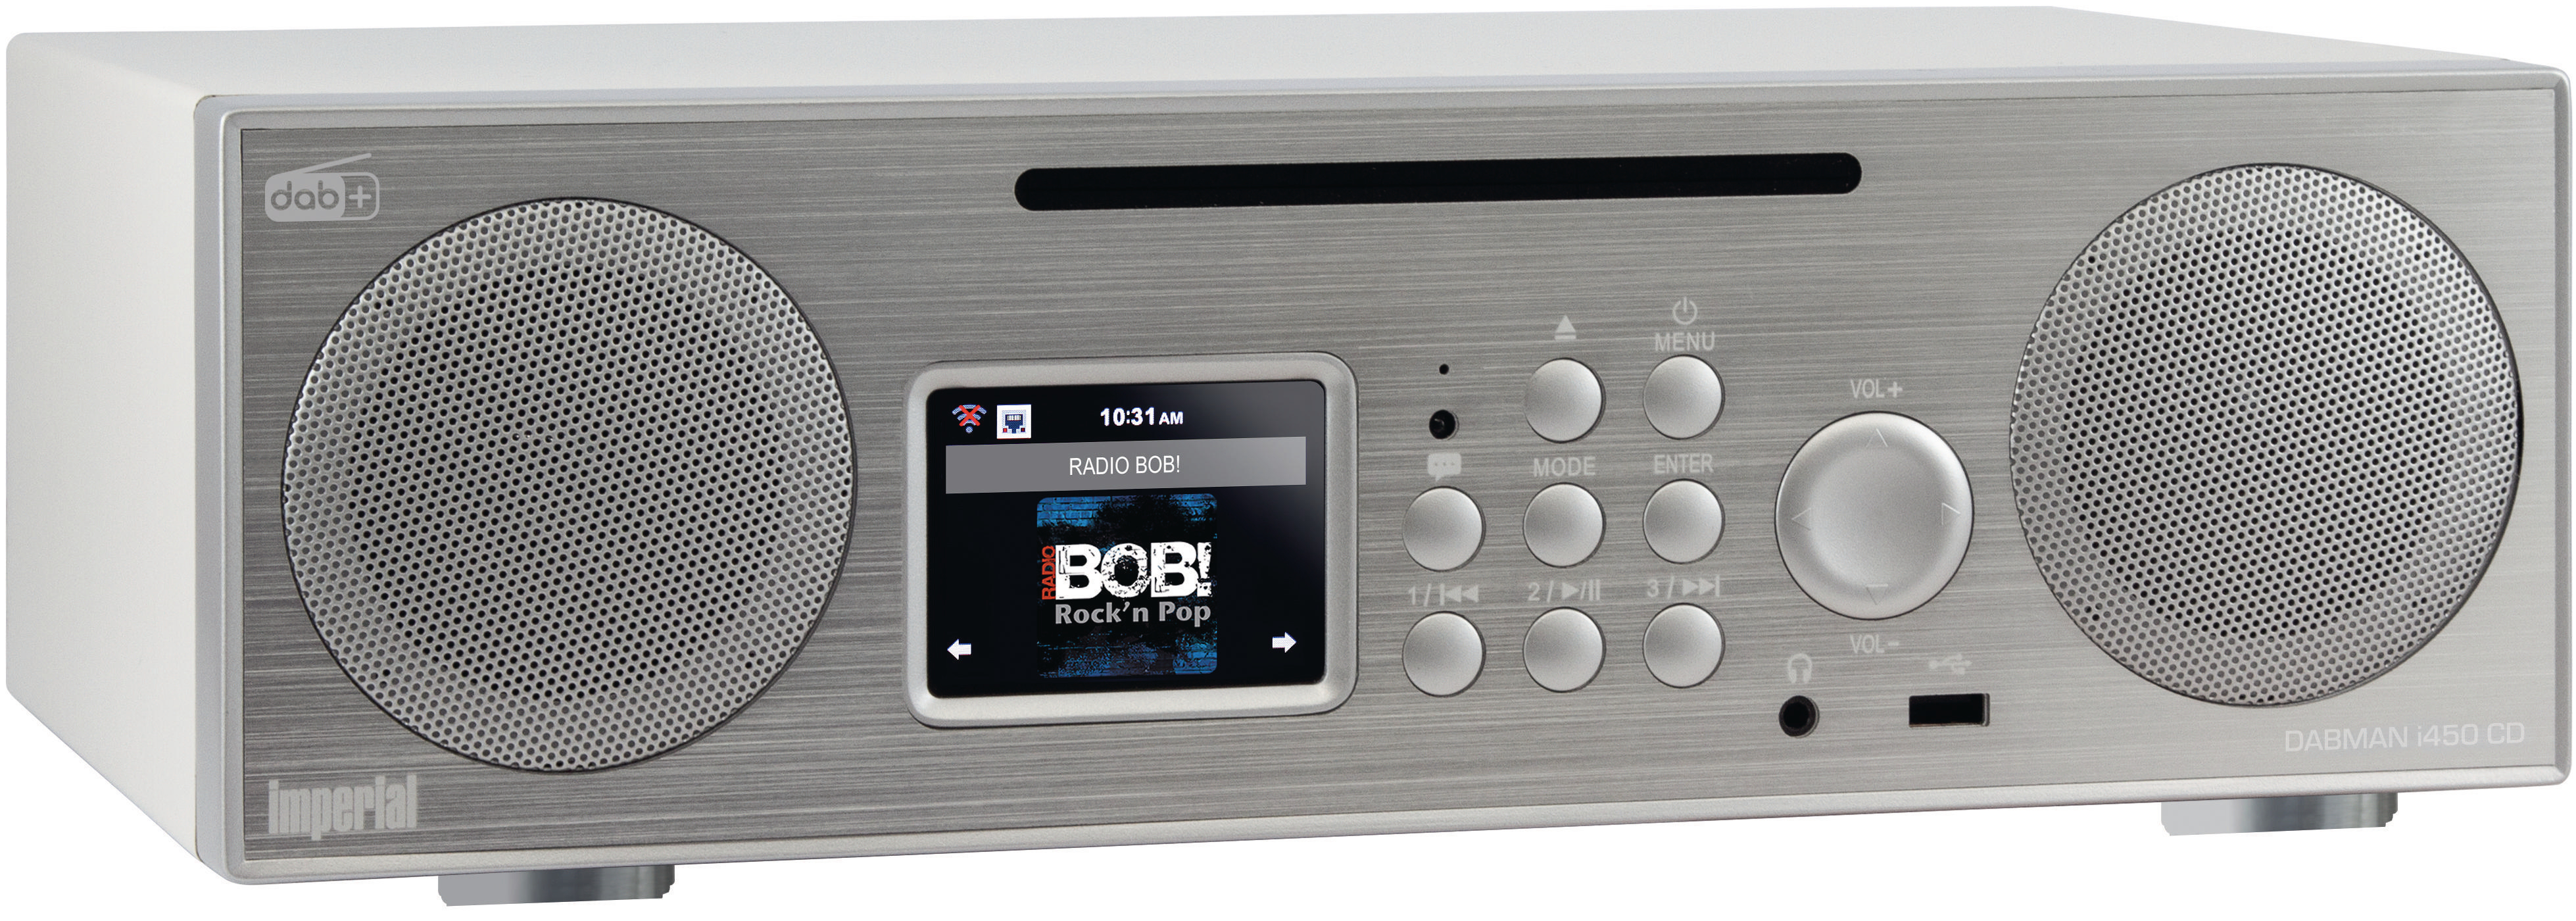 DAB, Bluetooth, Radio, Radio, i450 DABMAN CD silber/weiß AM, Internet IMPERIAL DAB+ DAB+, FM,